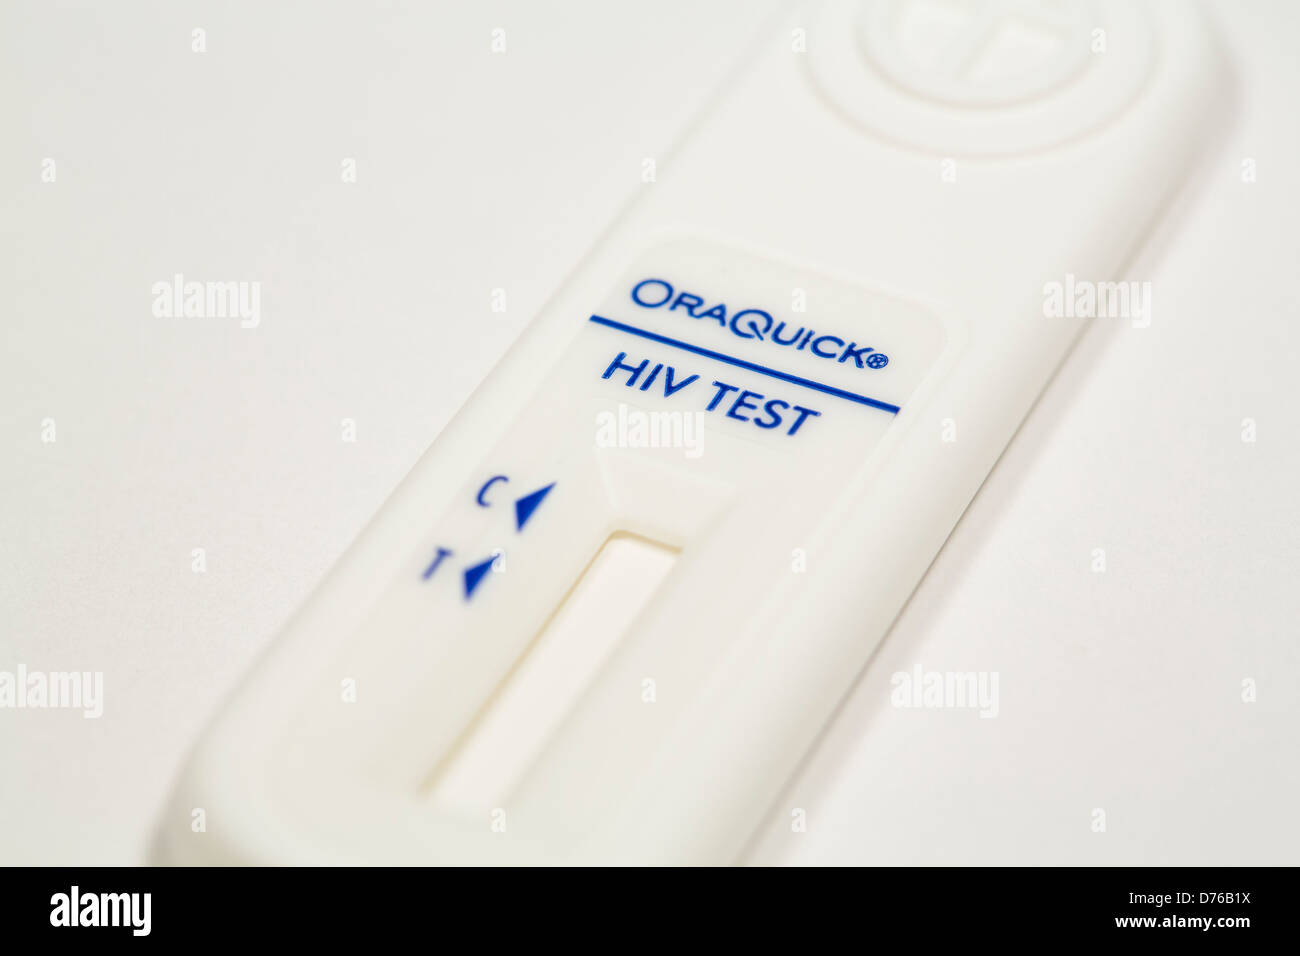 Ein Oraquick-Home-HIV Test-Kit. Stockfoto